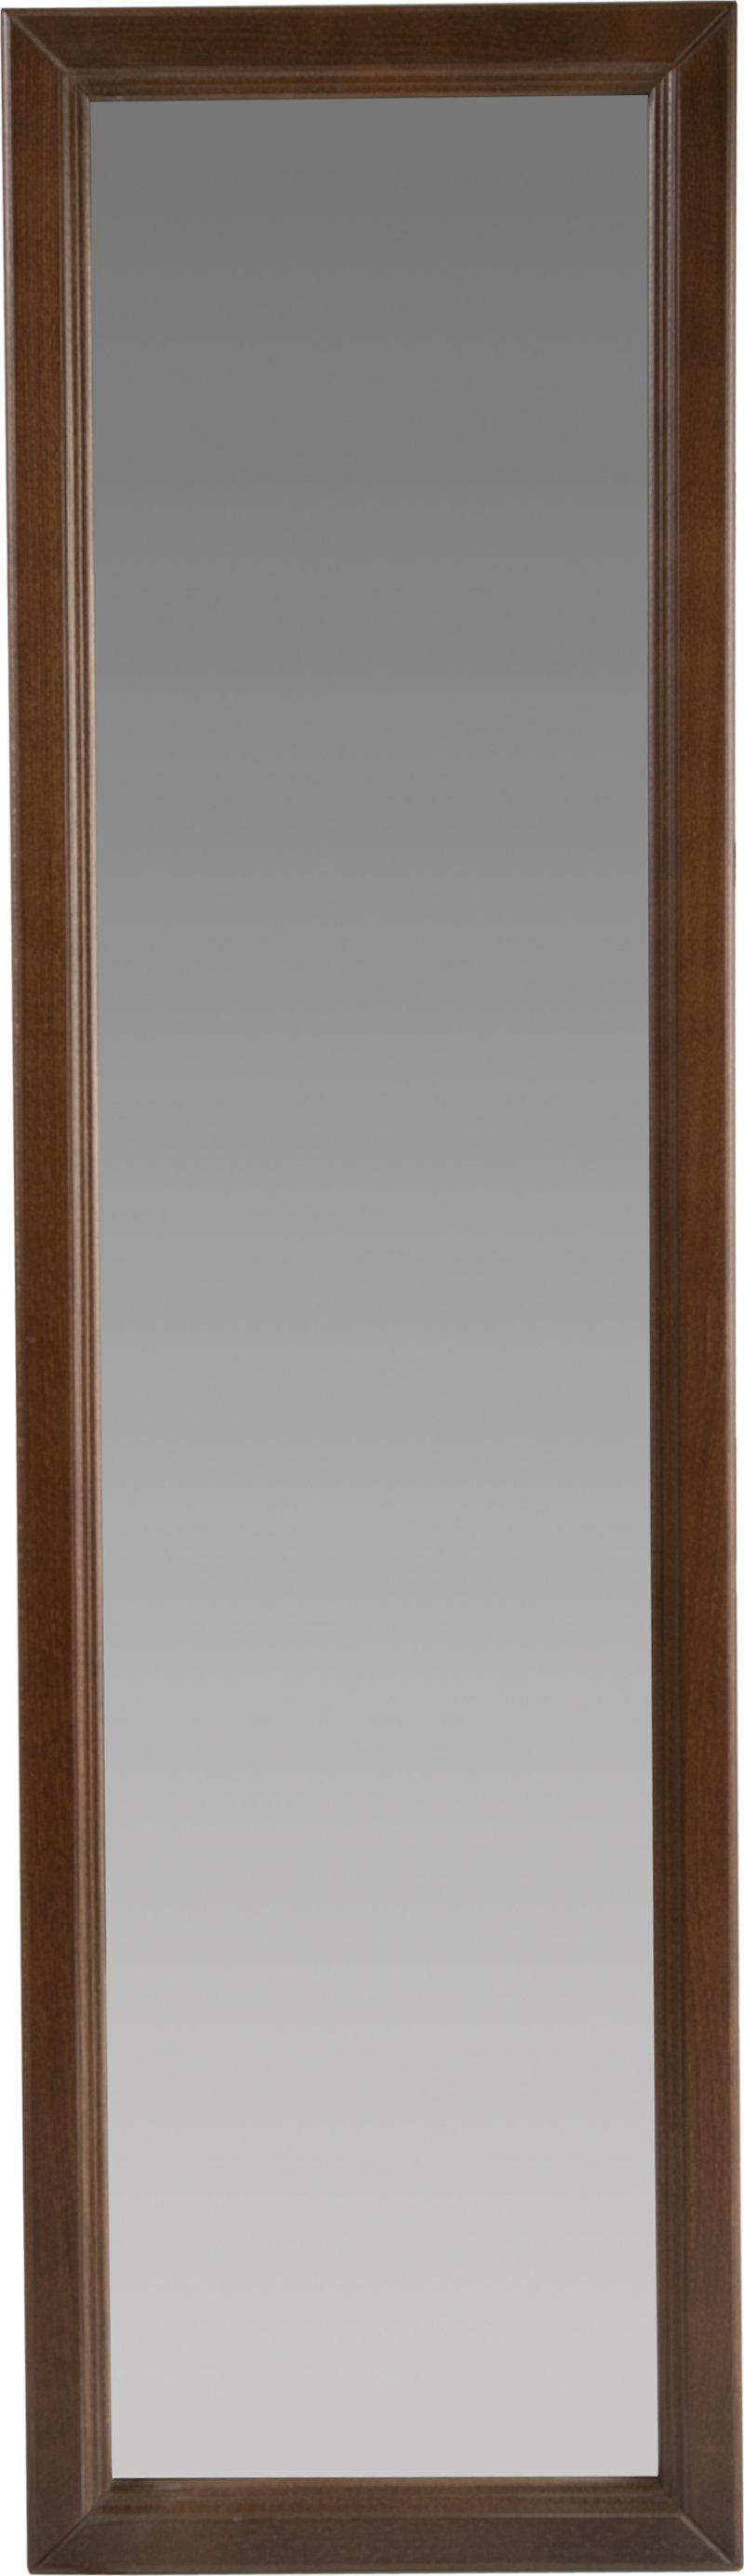 Зеркало настенное «Селена» Средне-коричневый